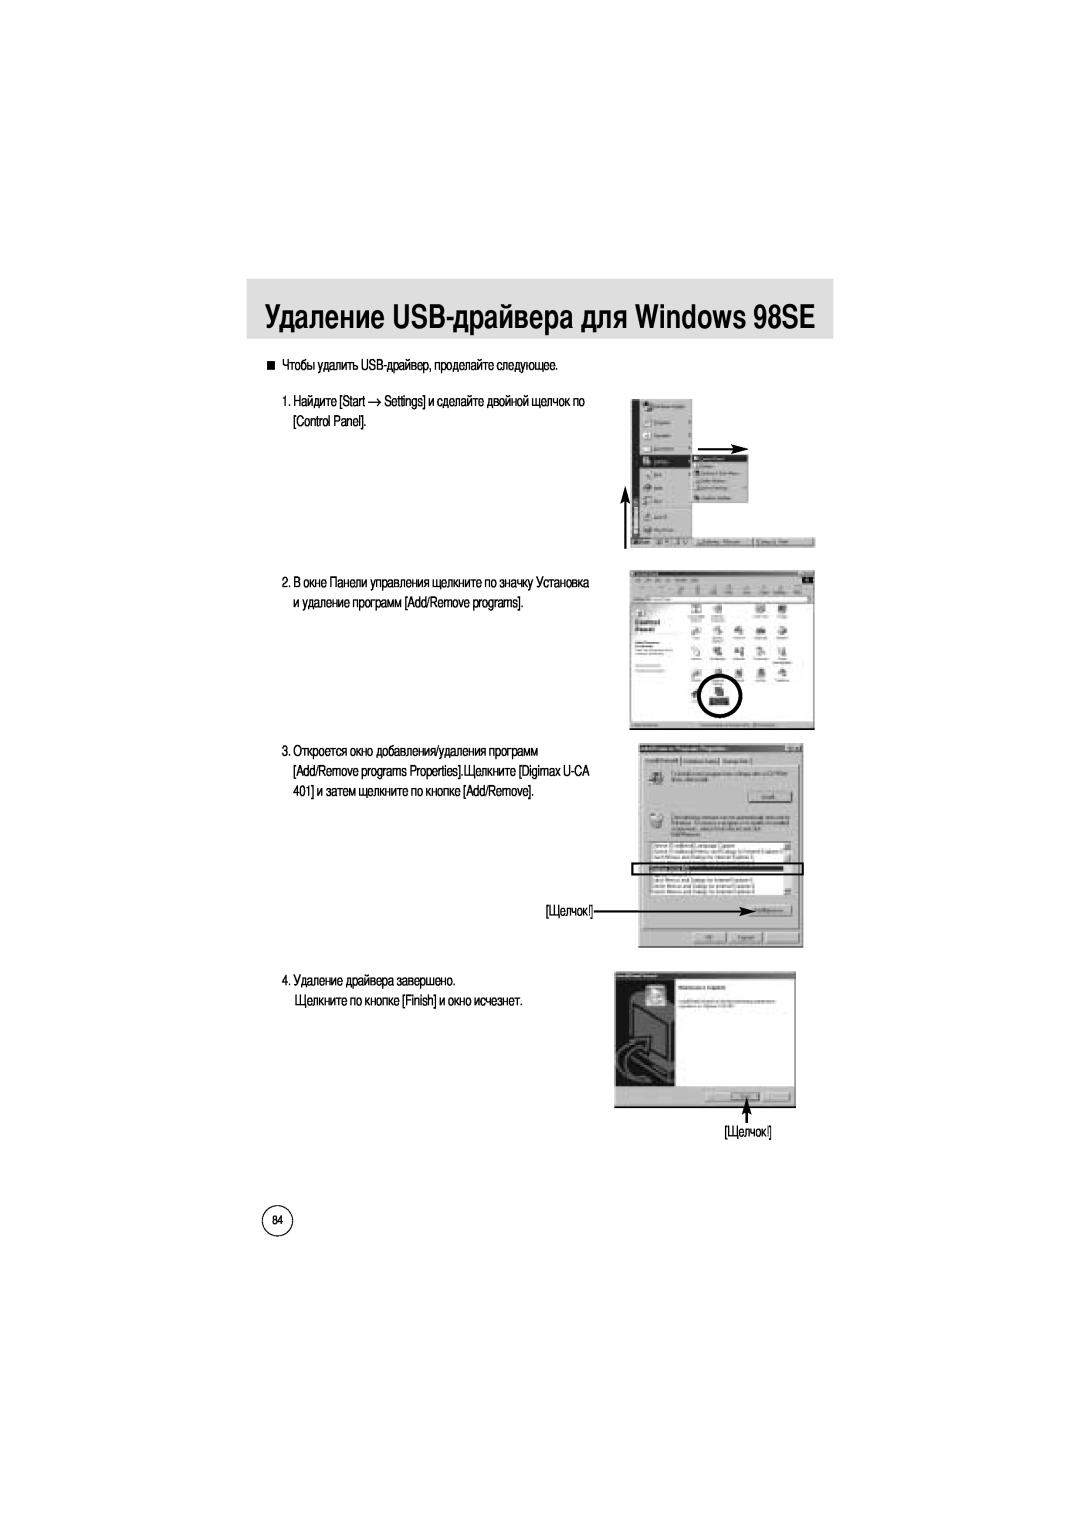 Samsung EC-UCA4ZSBA/FR Удаление USB-драйвера для Windows 98SE, 1. → Settings и сделайте двойной щелчок по Control Panel 